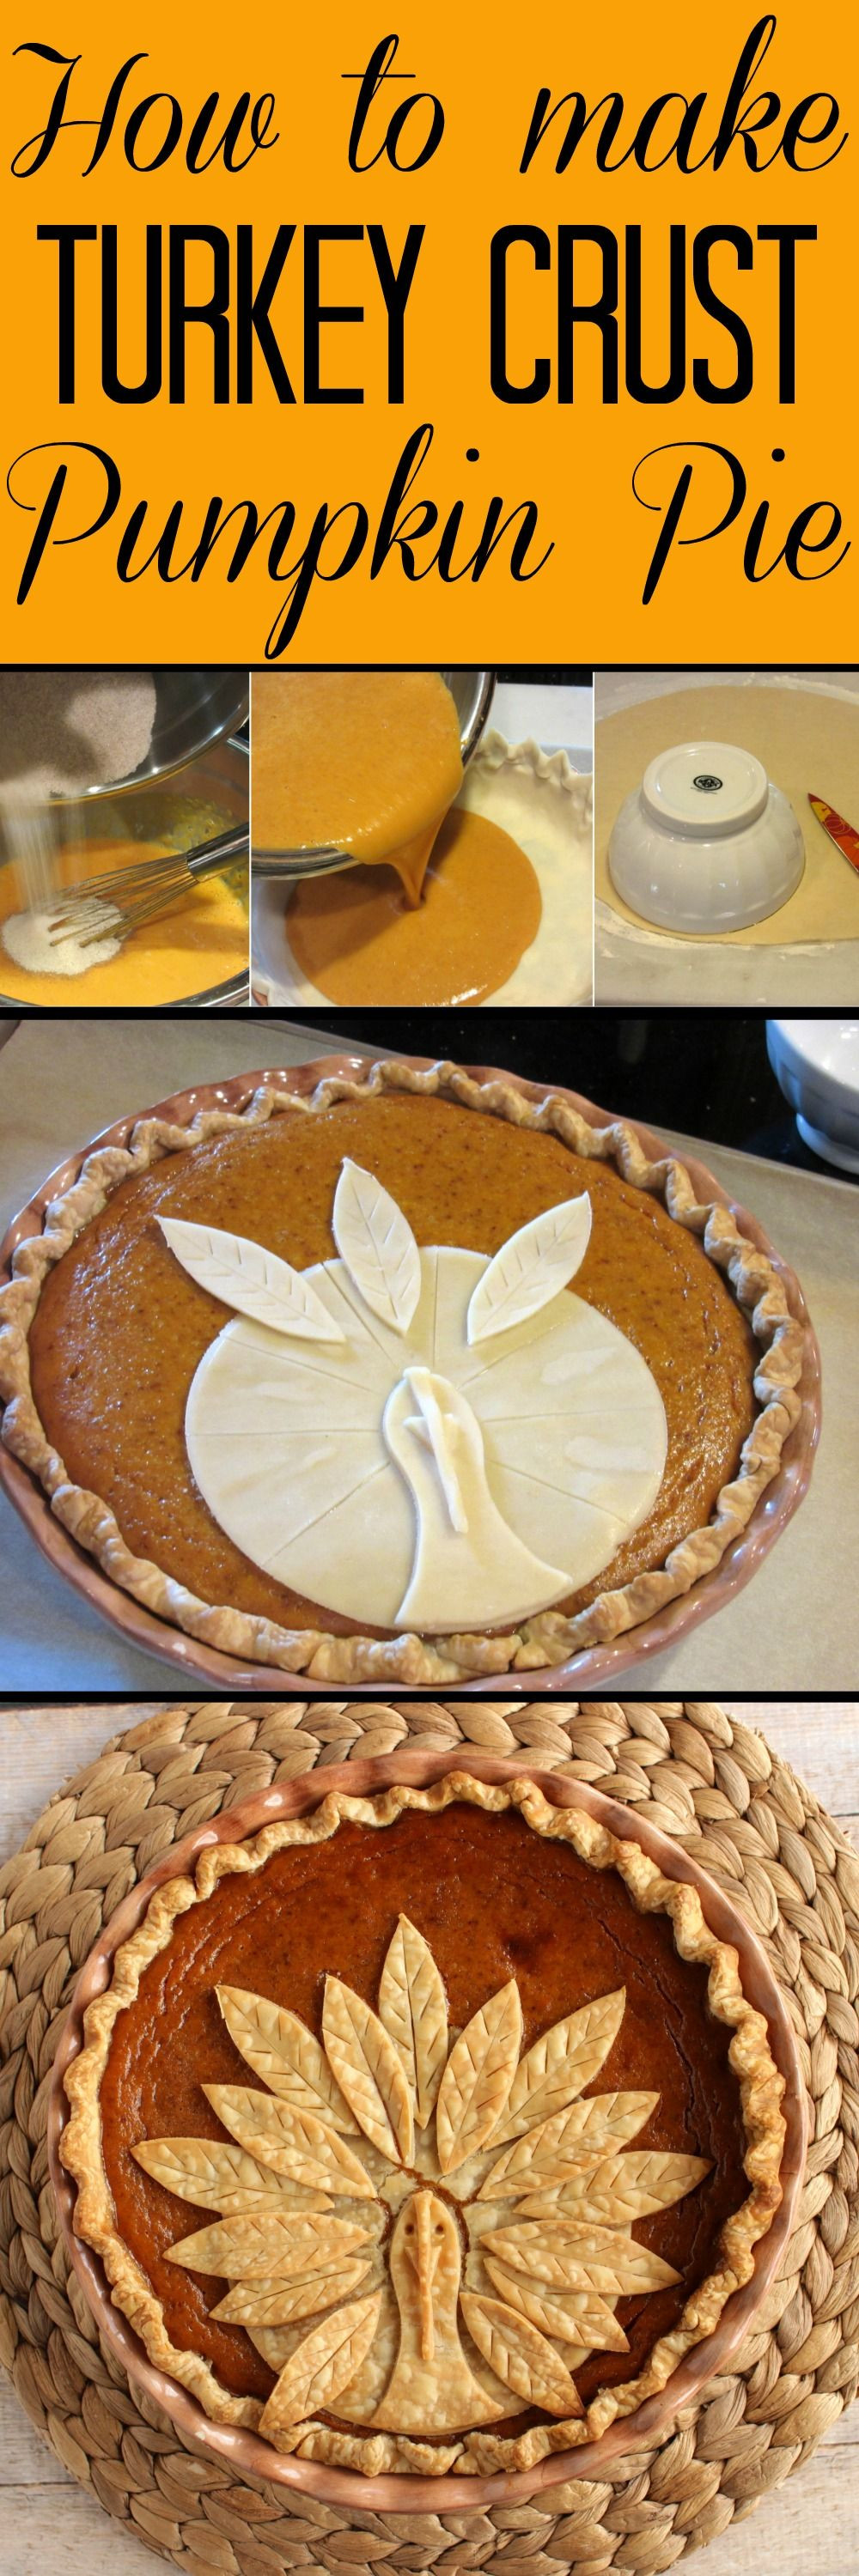 Thanksgiving Pumpkin Pie
 Adorable Turkey Crust Pumpkin Pie Recipe